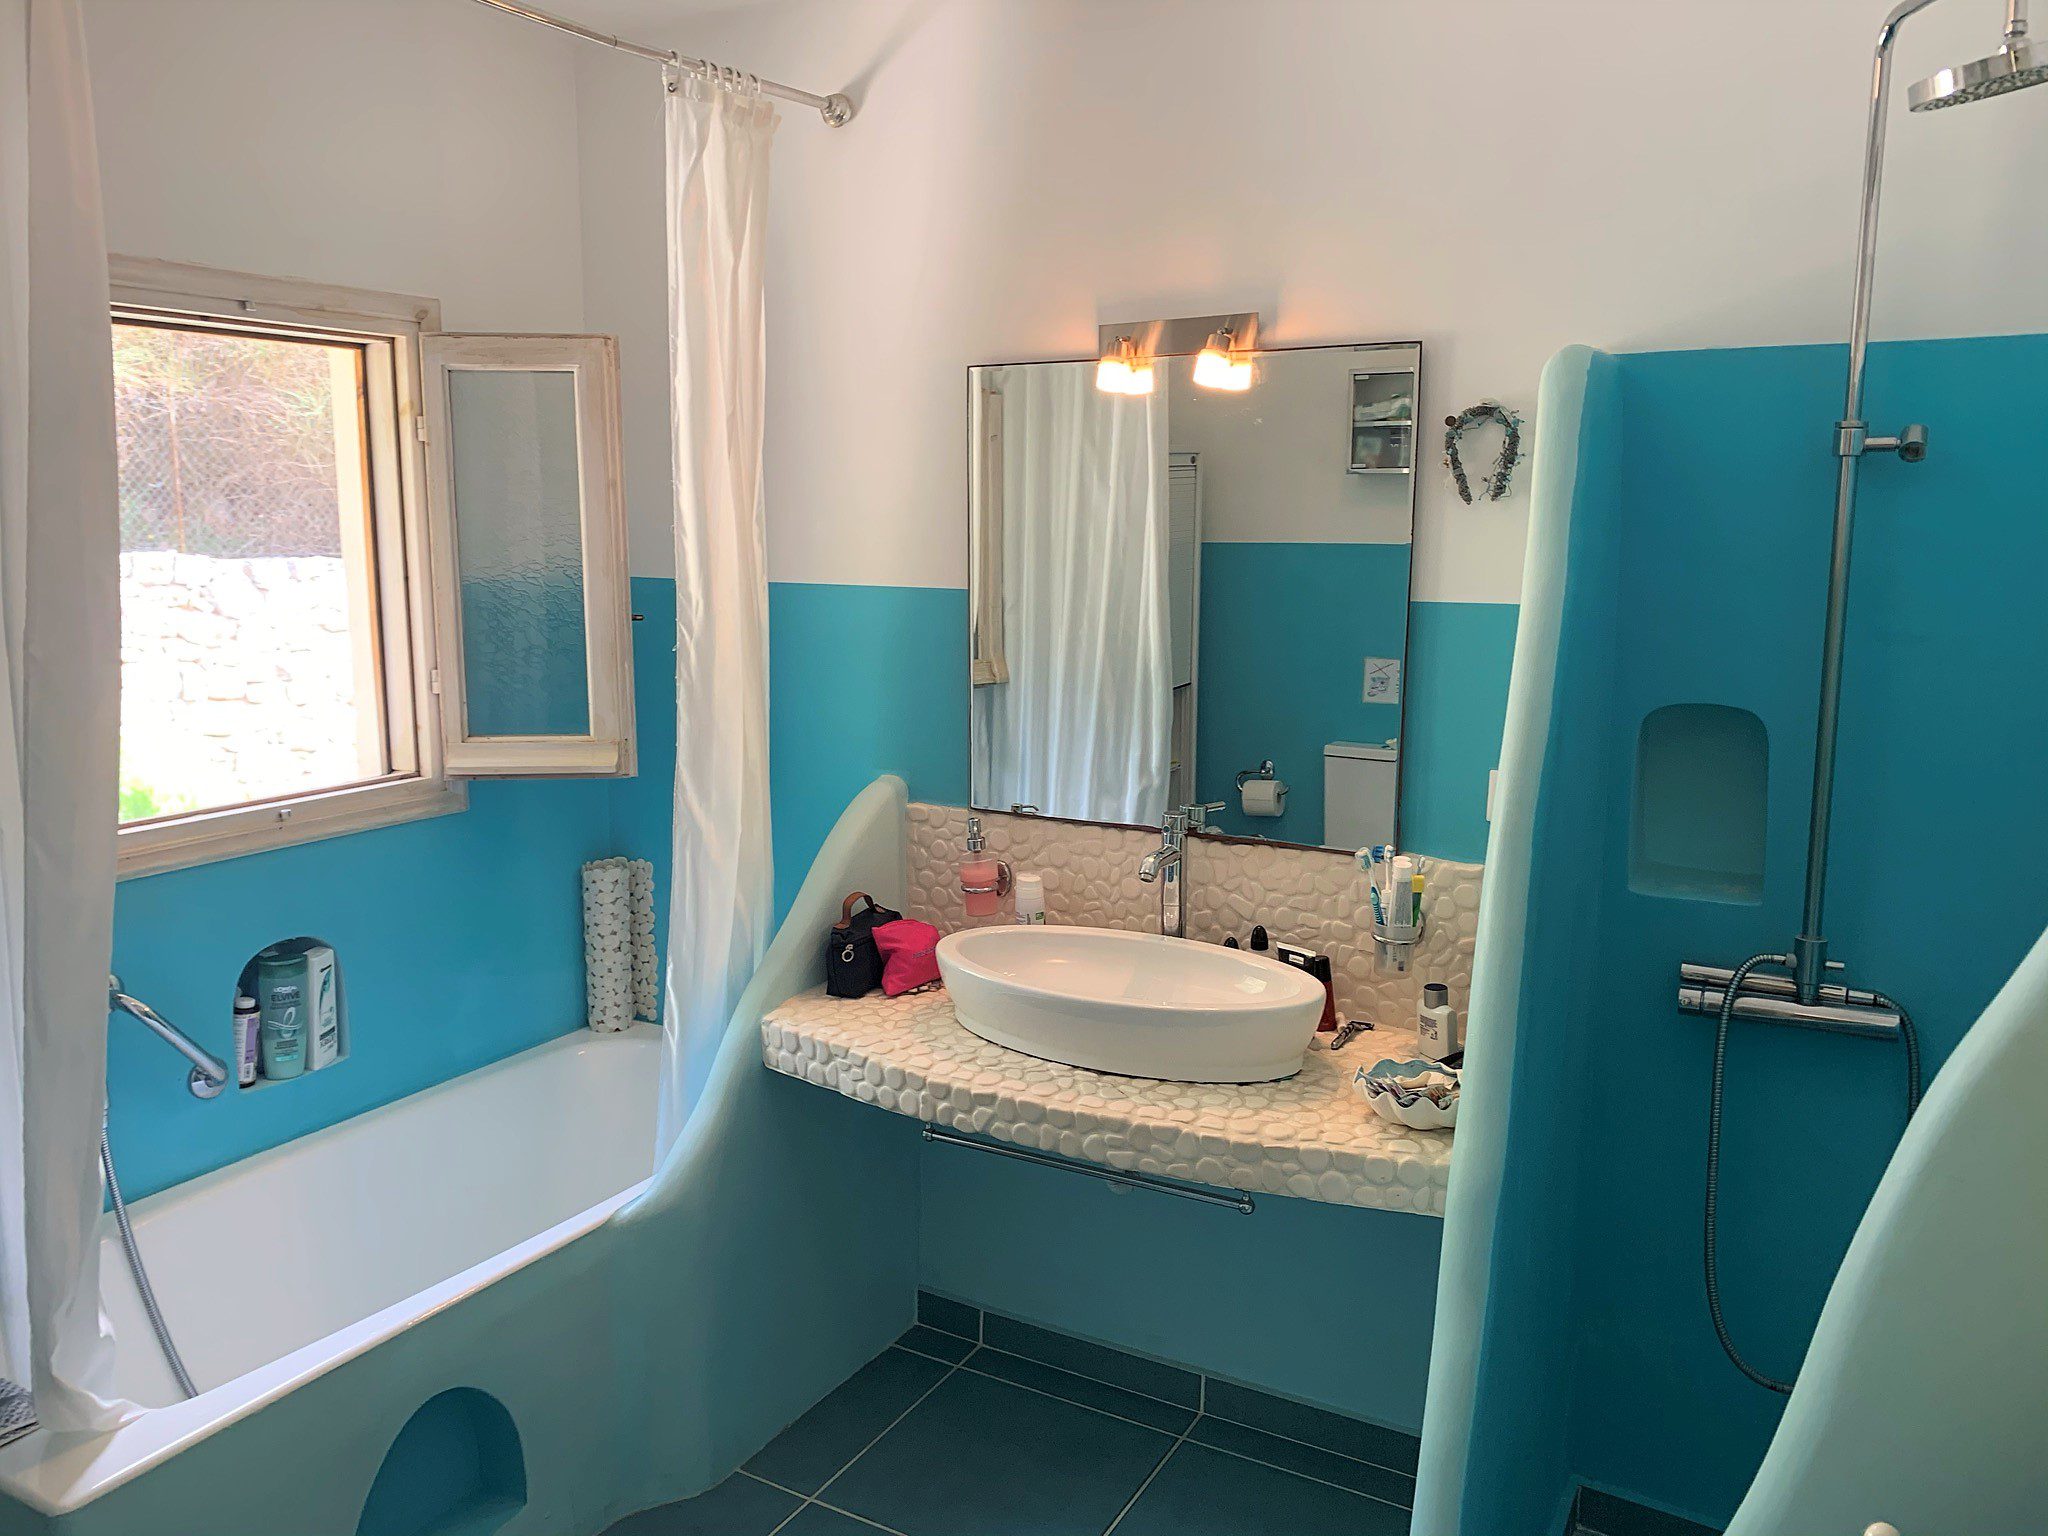 Εσωτερικό μπάνιο του σπιτιού προς πώληση στην Ιθάκη Ελλάδα Λεύκη